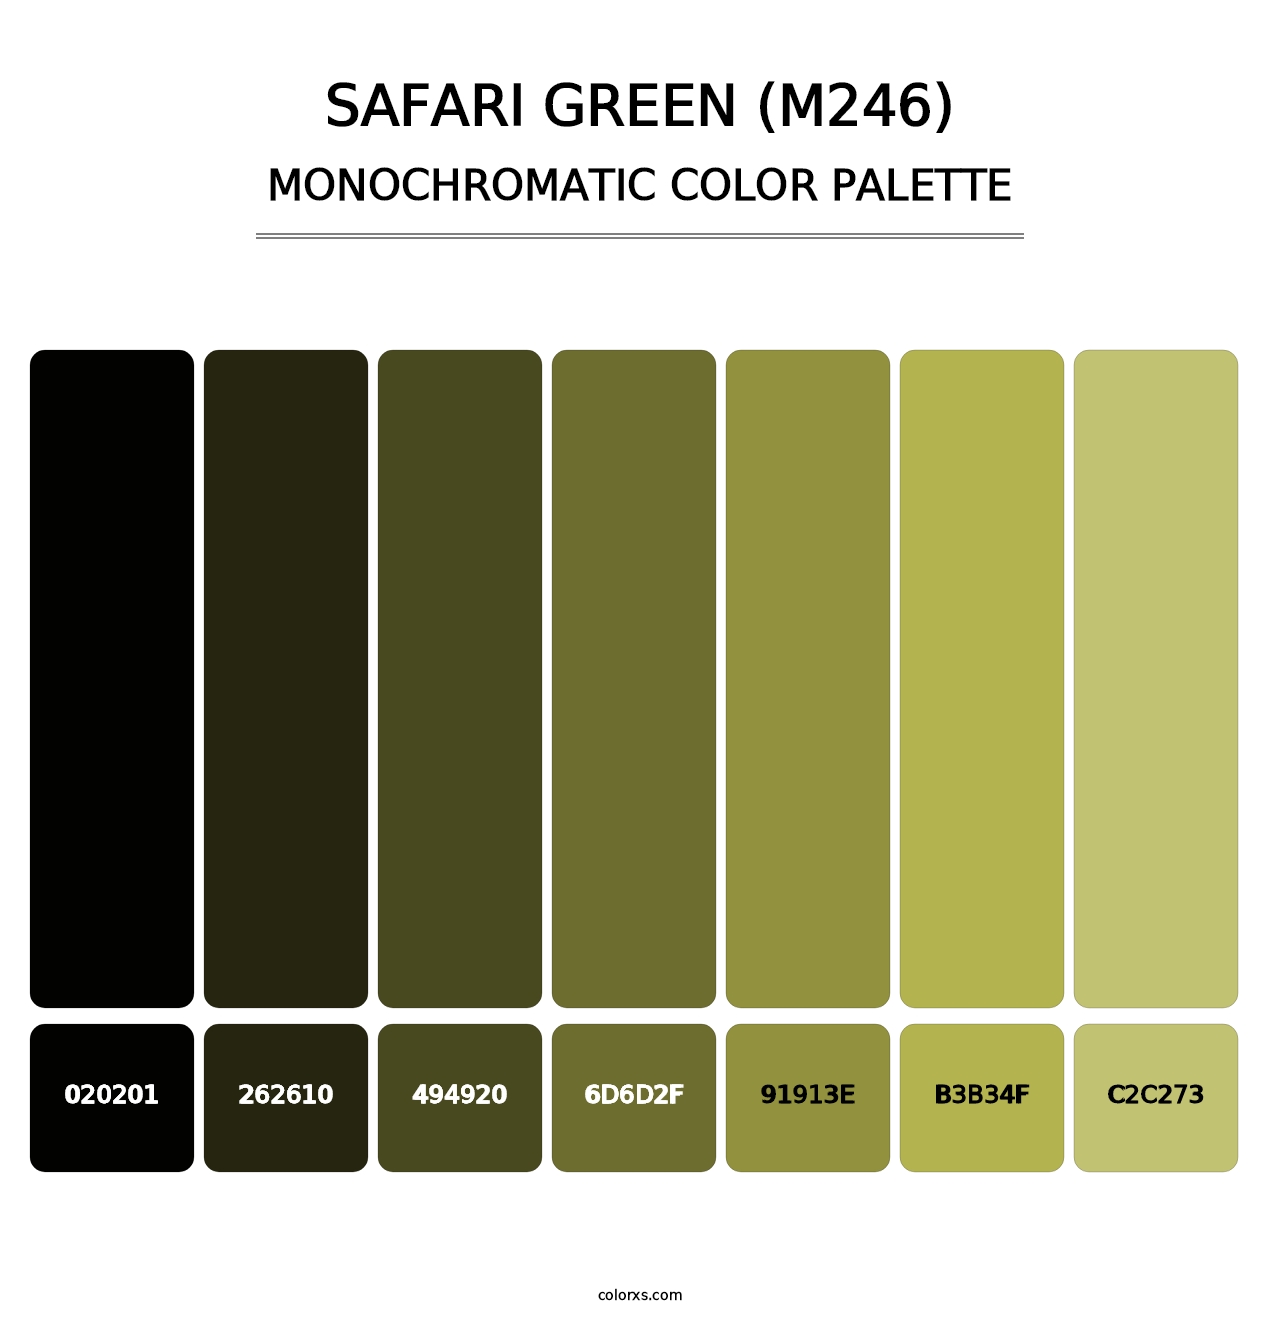 Safari Green (M246) - Monochromatic Color Palette